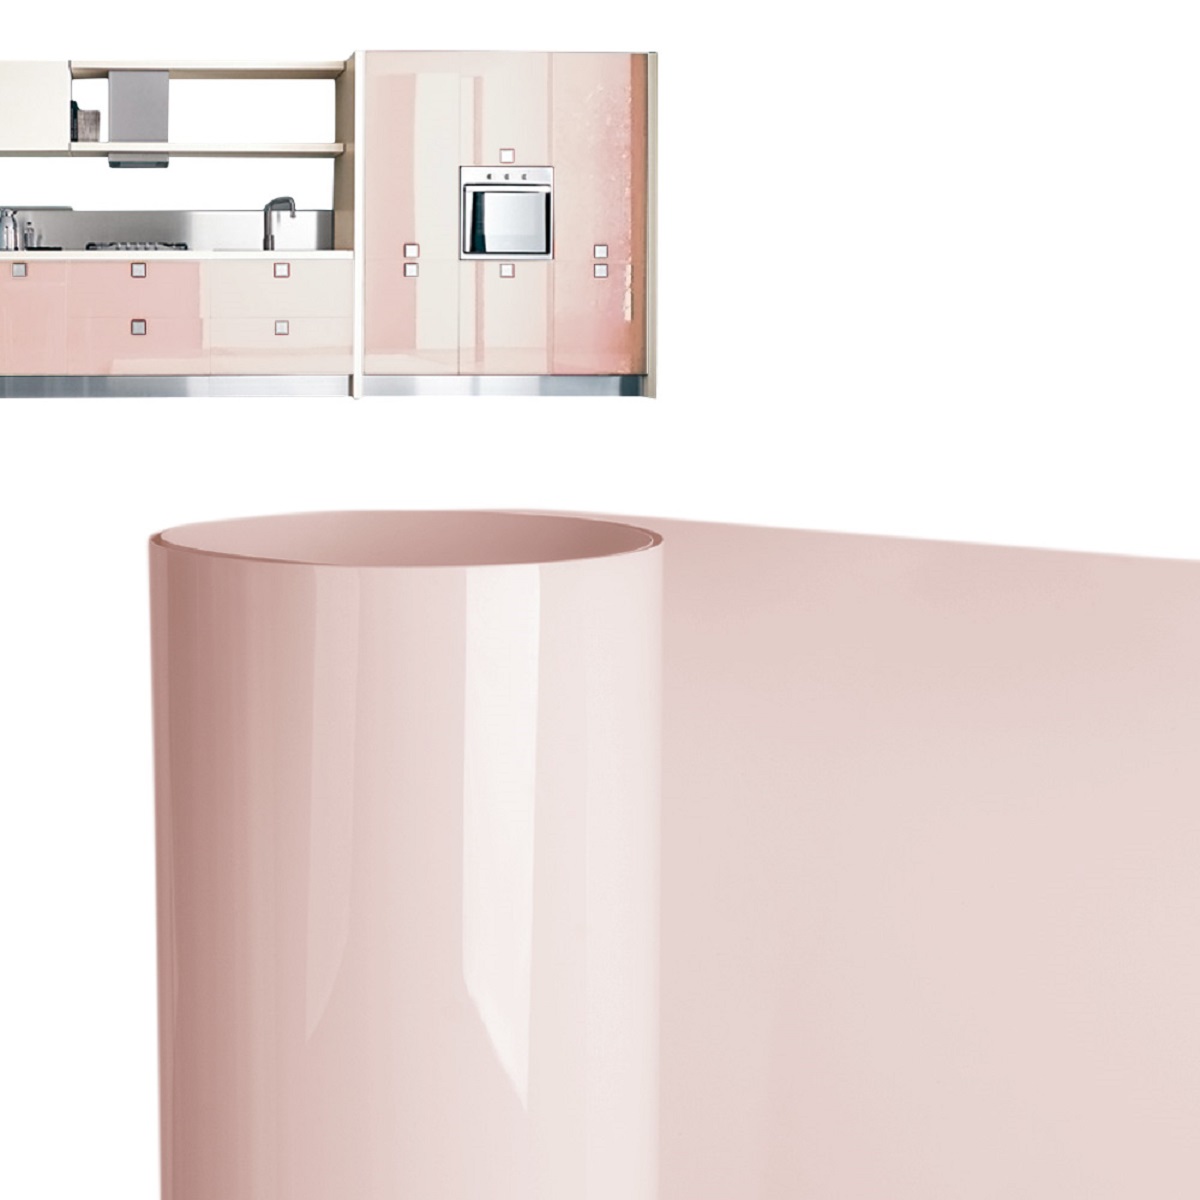 GAG粉色高光膜 橱柜衣柜家具高光装饰膜供应商